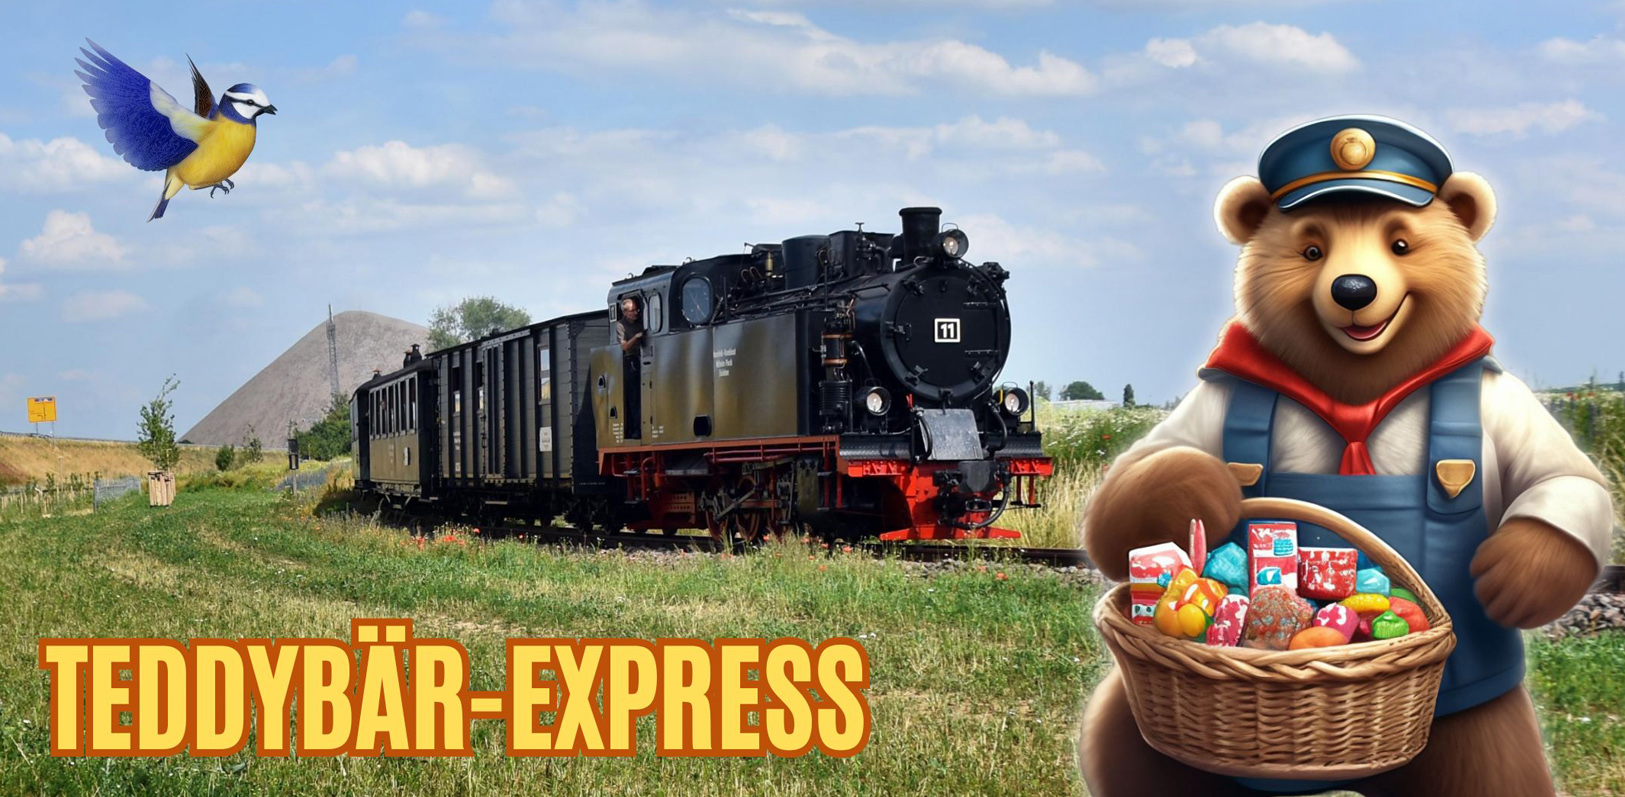 Teddybär - Express